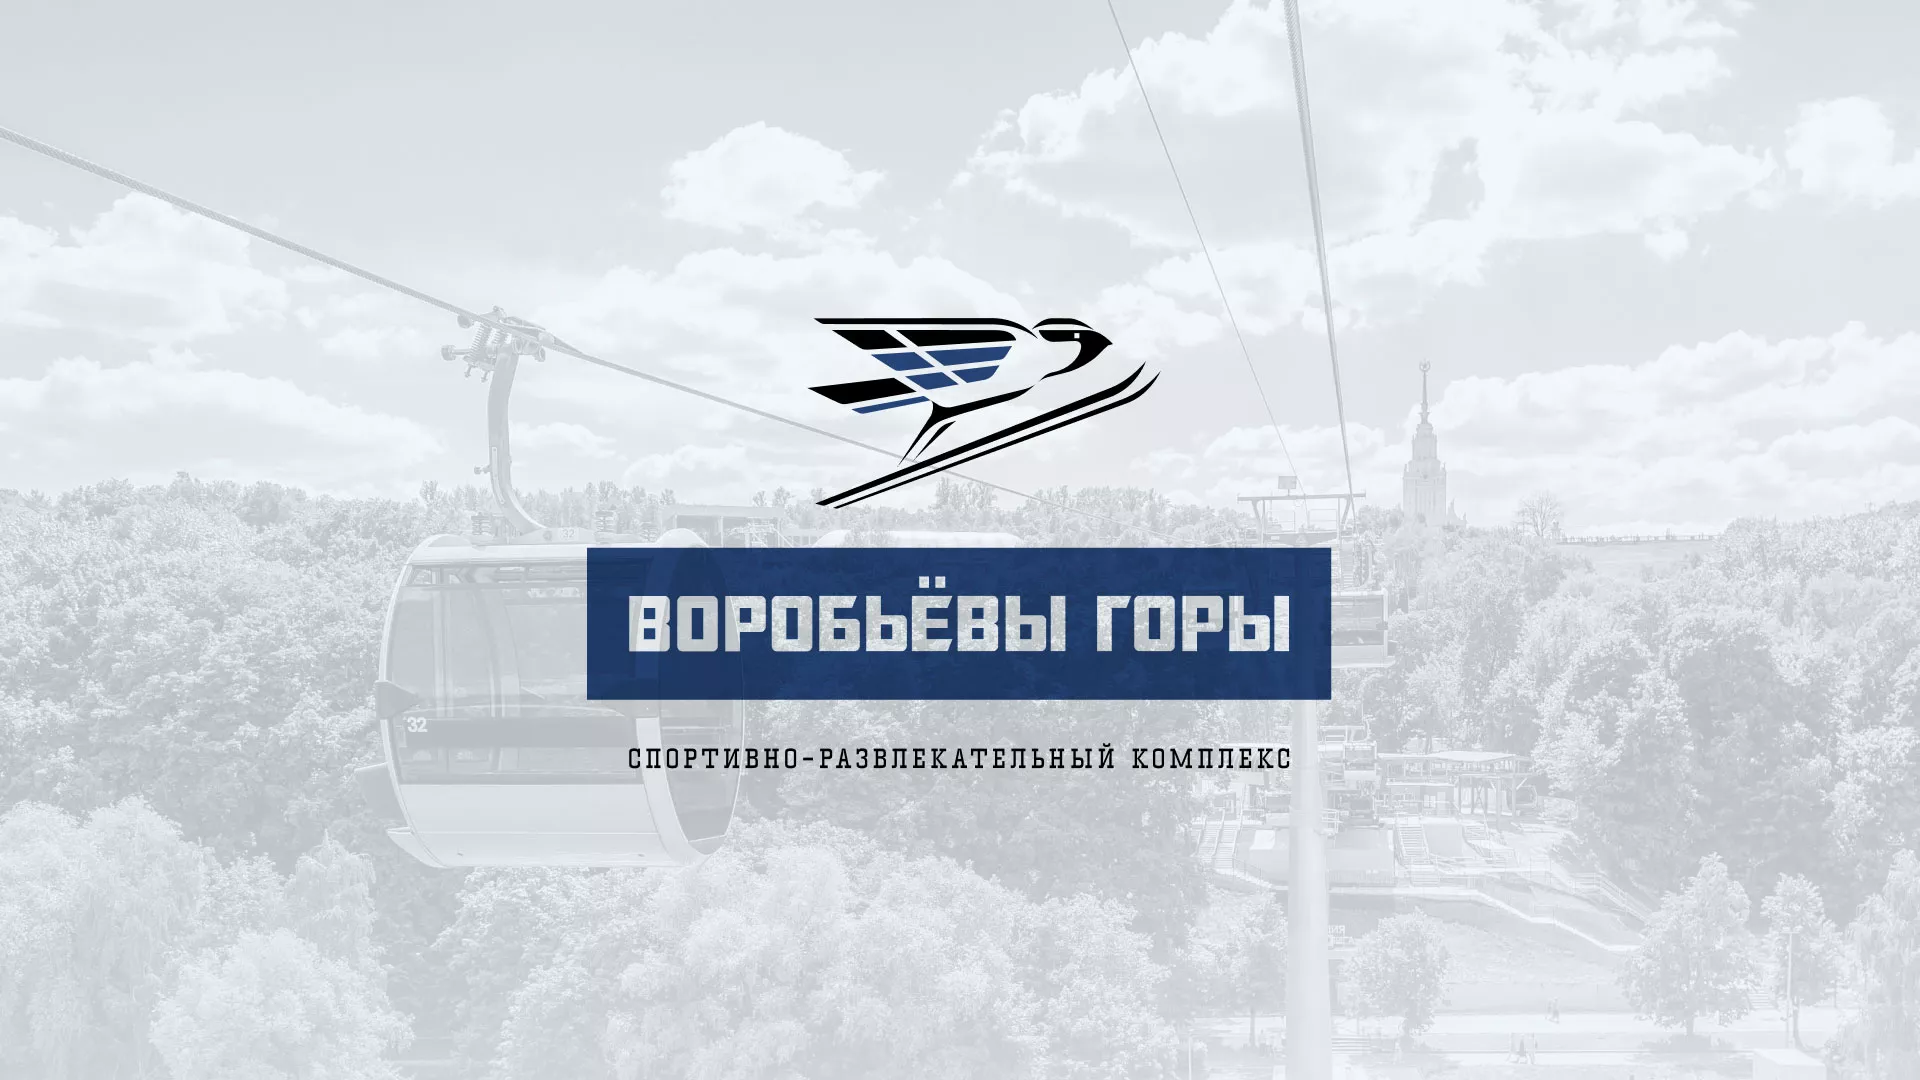 Разработка сайта в Комсомольске для спортивно-развлекательного комплекса «Воробьёвы горы»